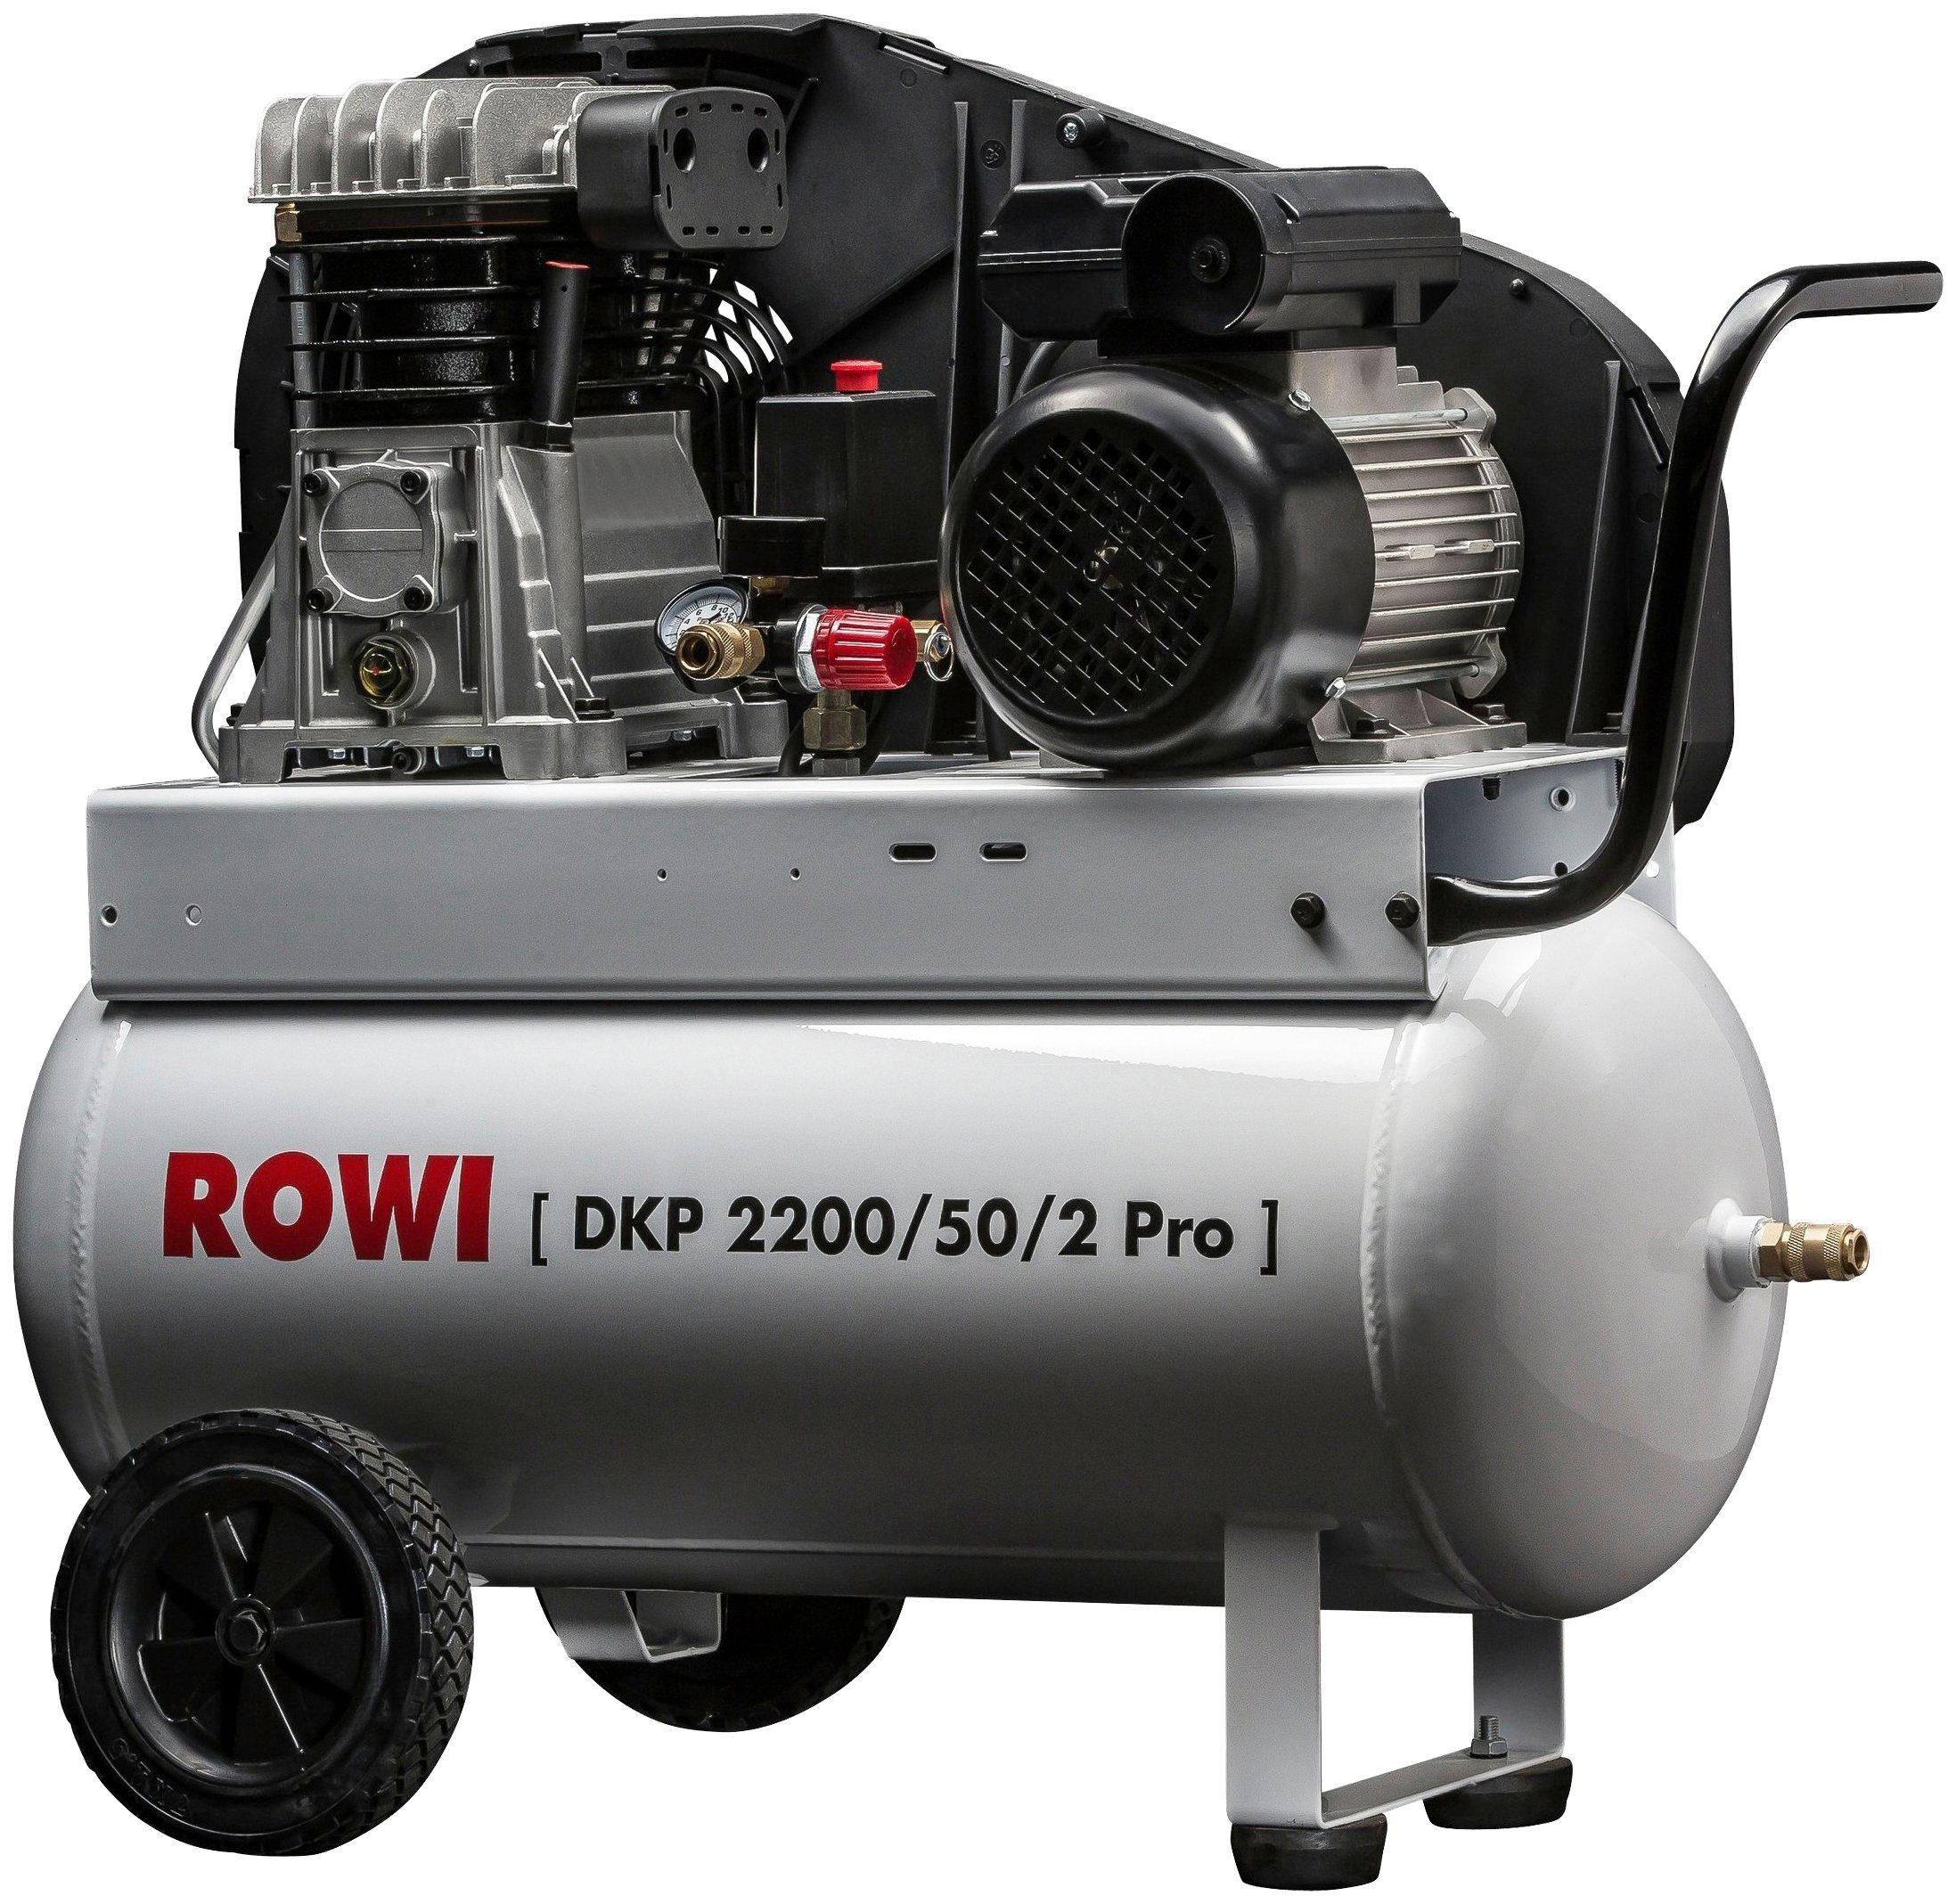 ROWI Kompressor DKP 2200/50/2 Pro, 2200 W, max. 10 bar, 50 l, Packung | Druckluftgeräte